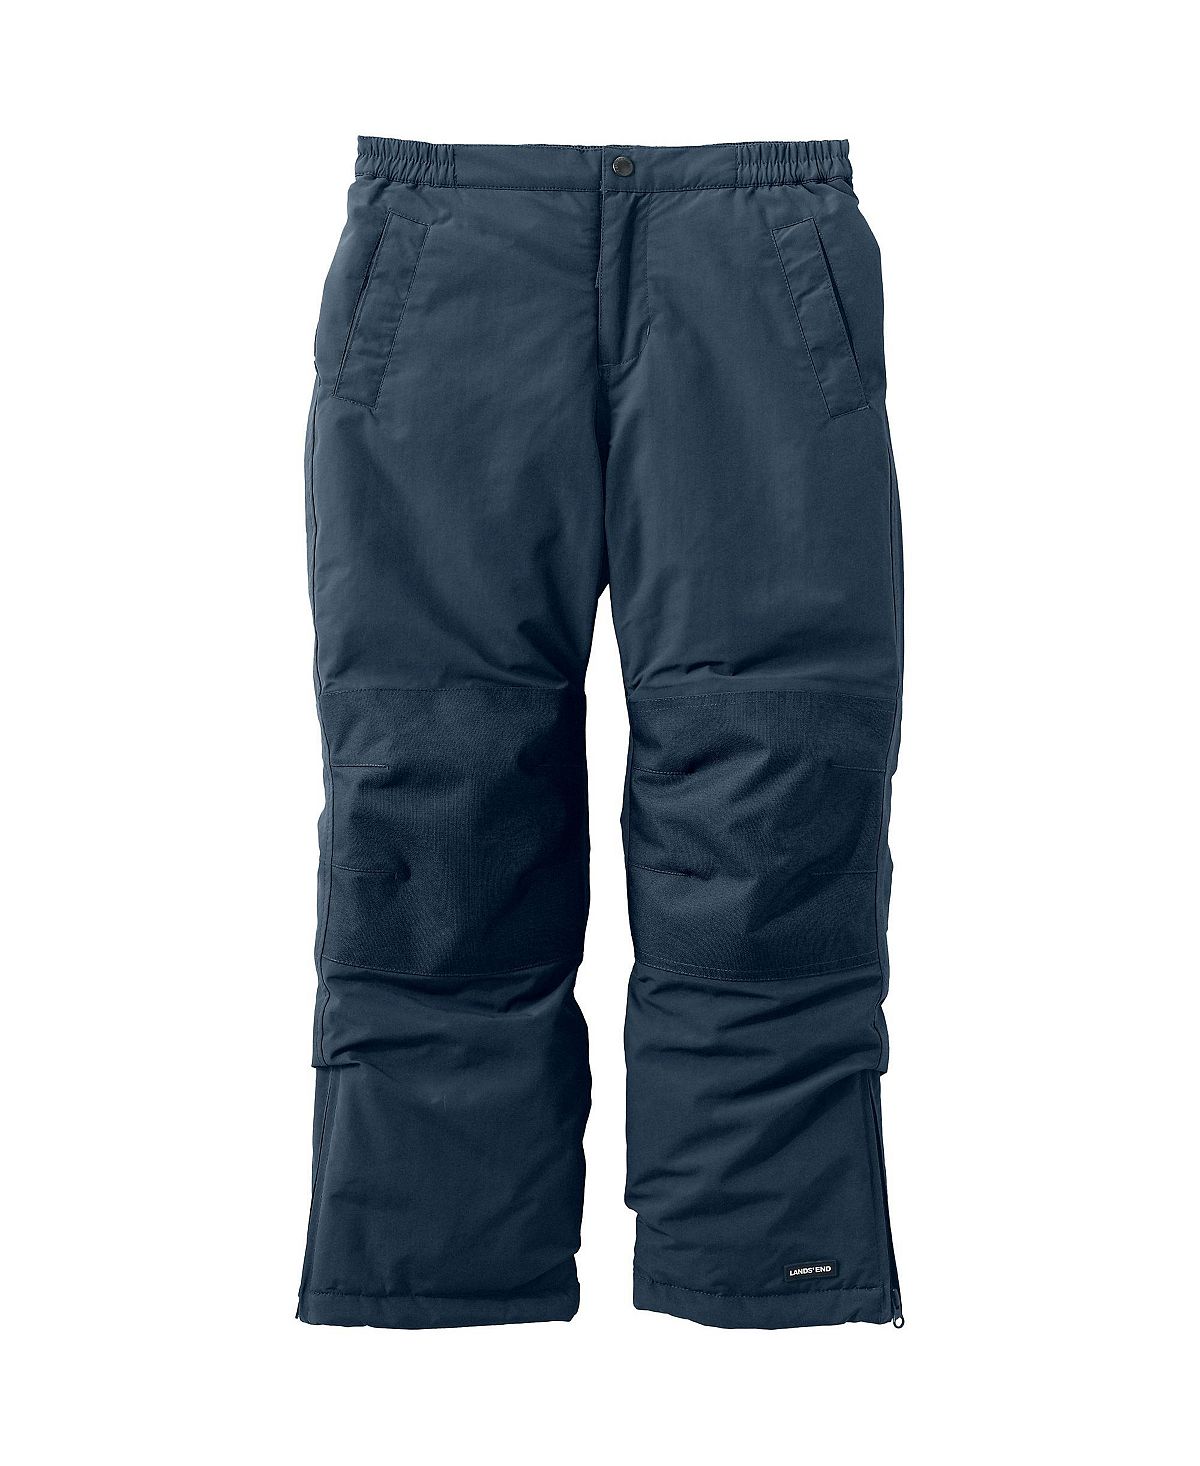 Детские зимние зимние штаны до колена для мальчиков с водонепроницаемыми утепленными железными штанами до колена Lands' End